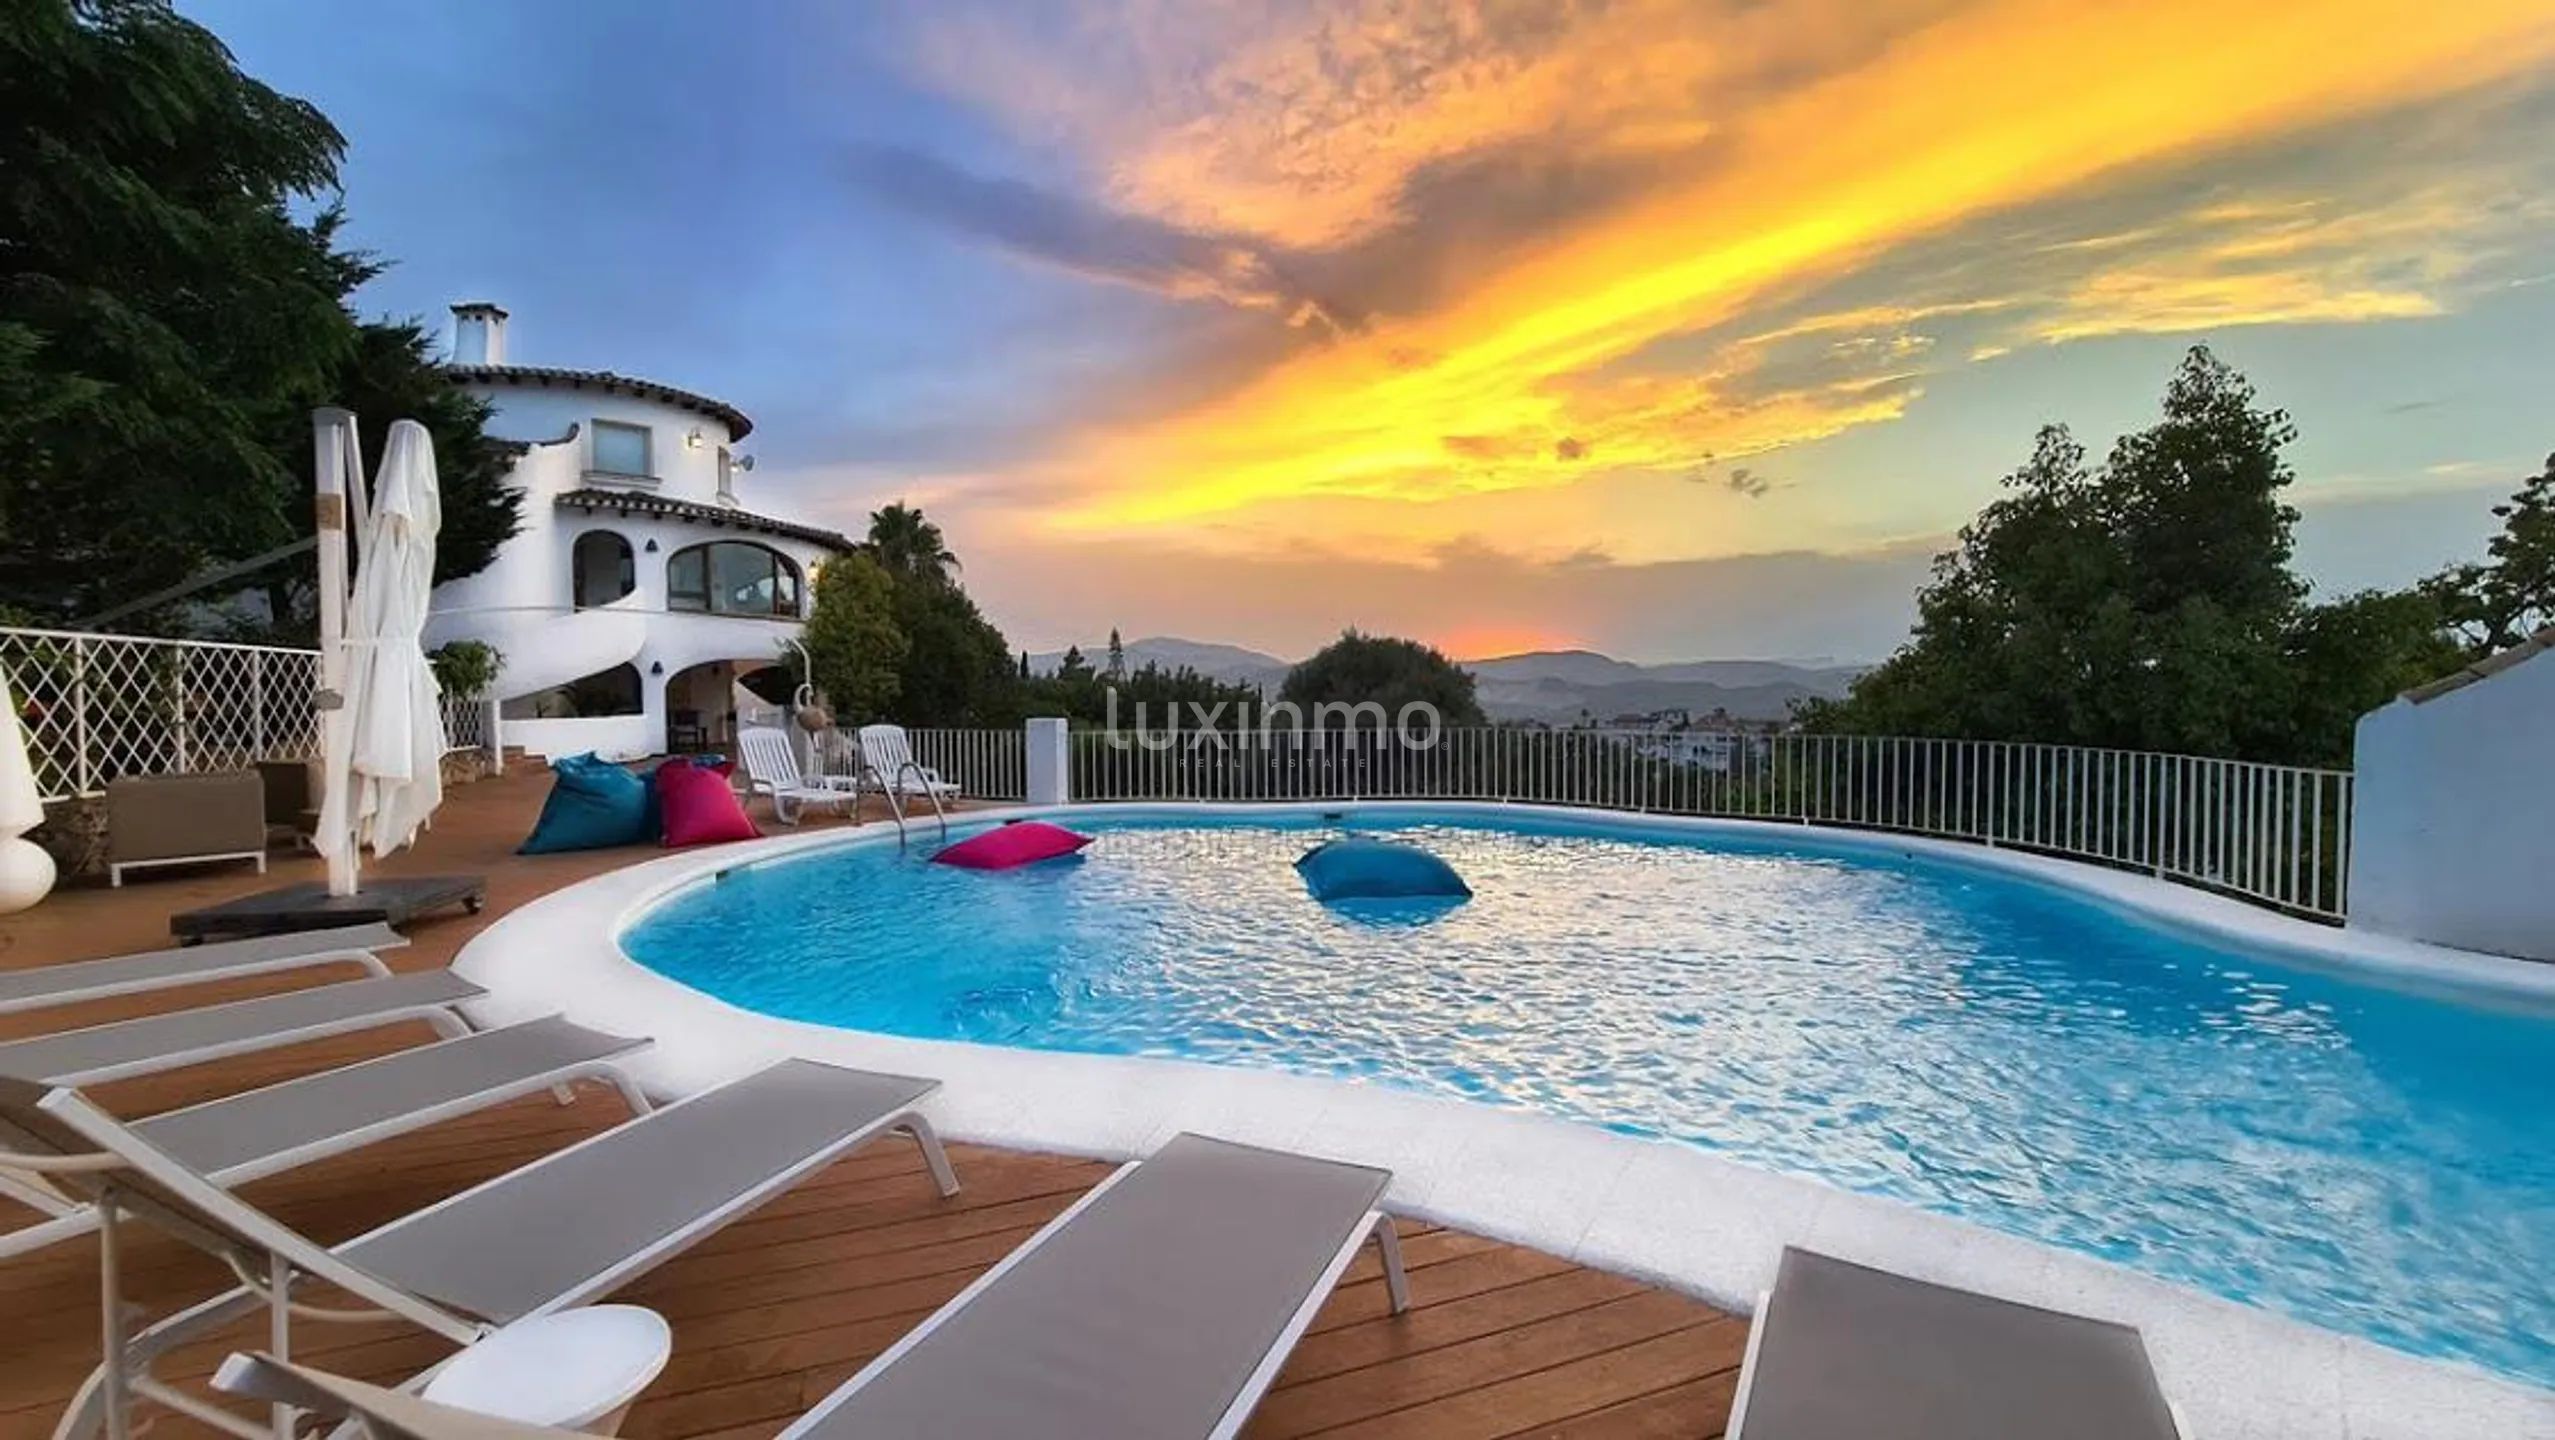 Casa de estilo mediterráneo con fantásticas vistas en Pego